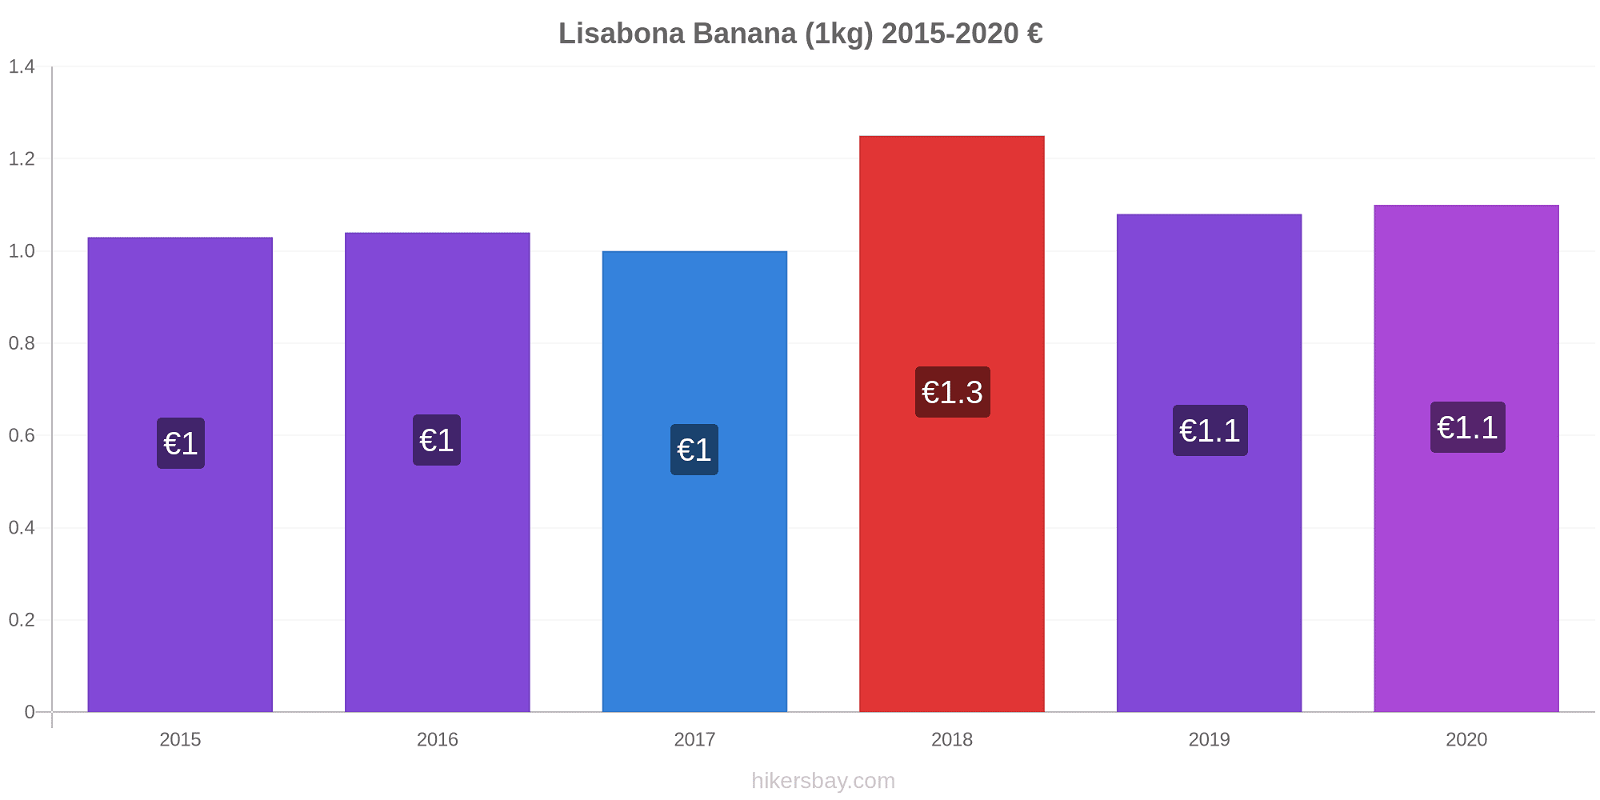 Lisabona modificări de preț Banana (1kg) hikersbay.com